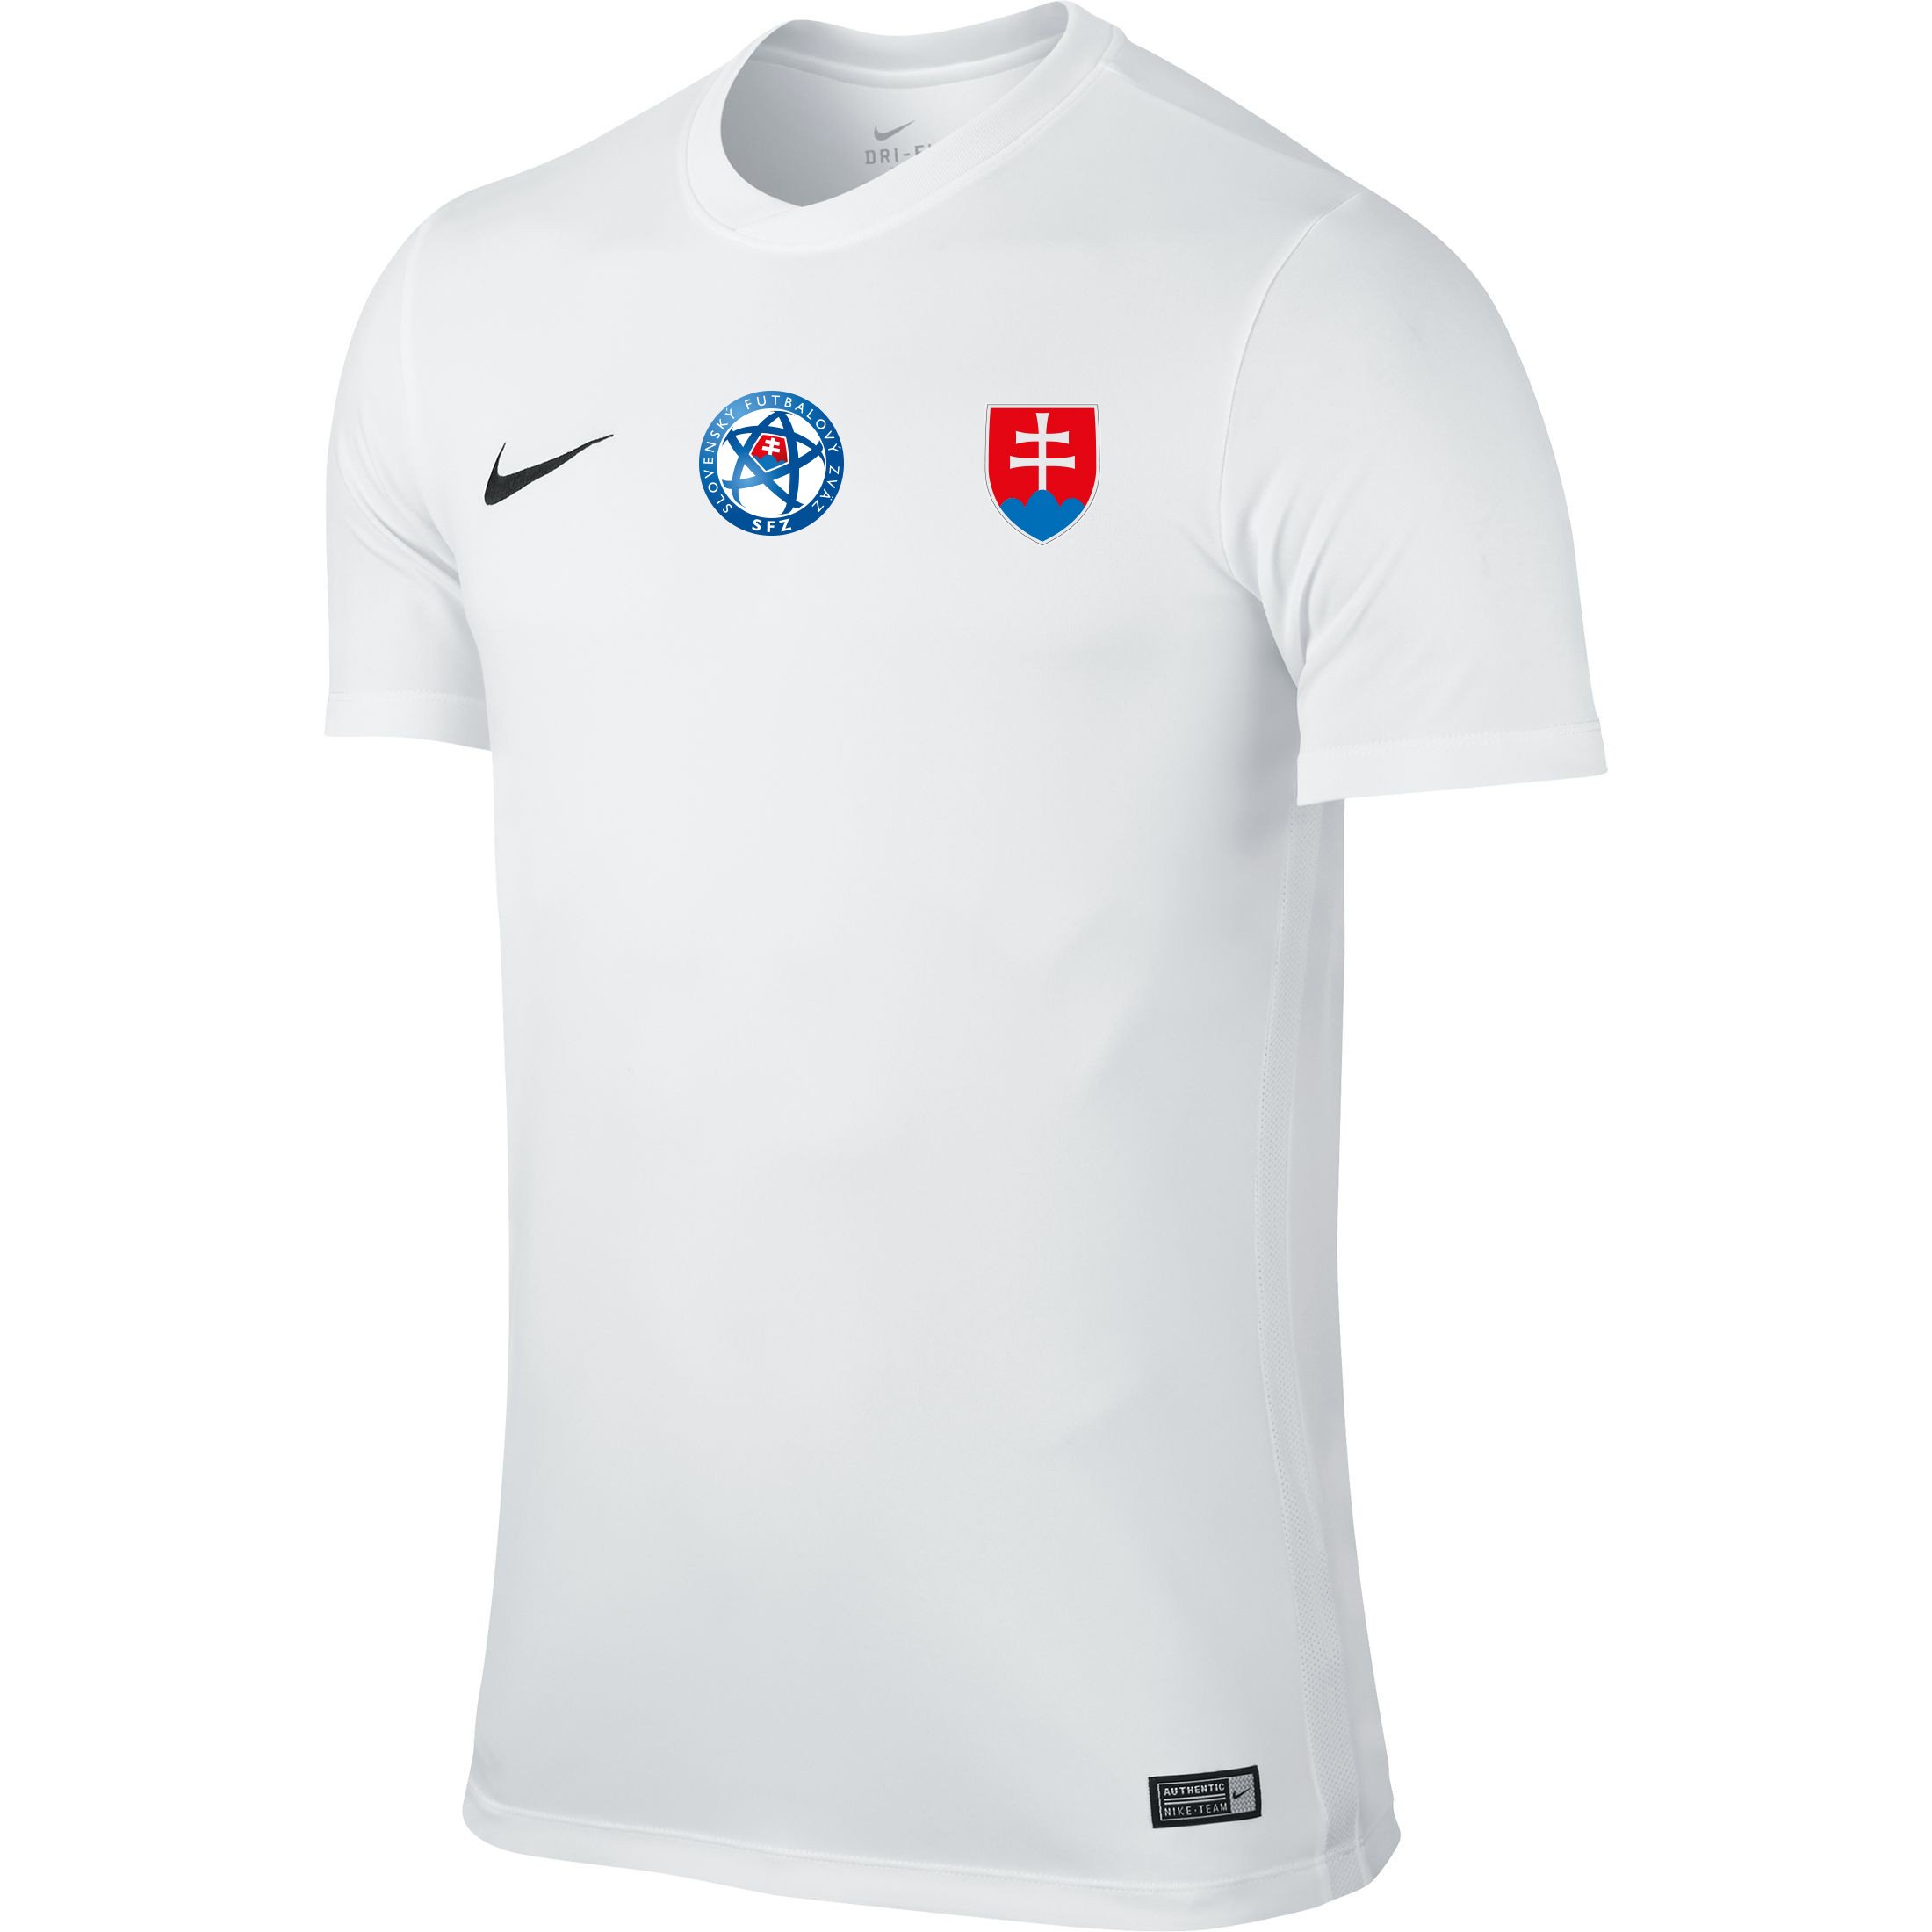 Camiseta Nike Slovakia Replica Home Football Jersey 2016/2017